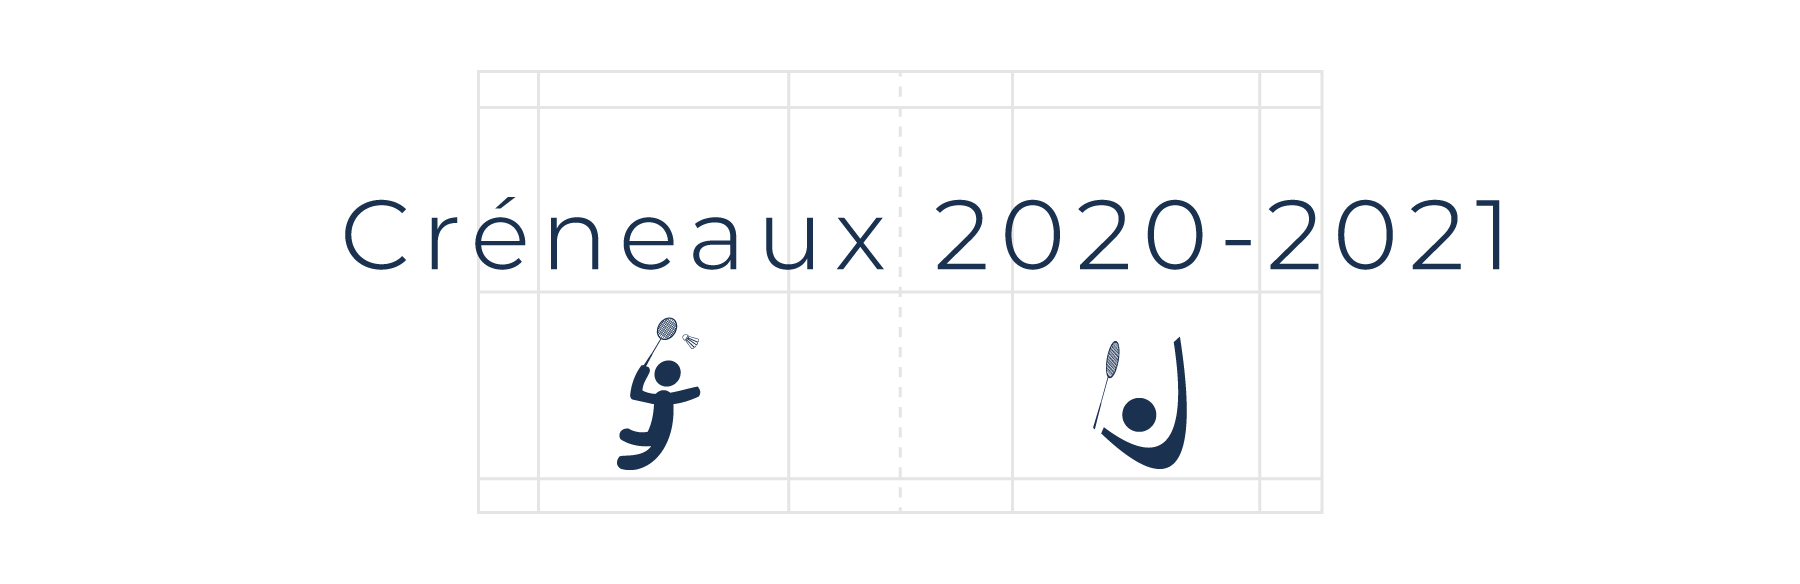 header-creneaux-2020-2021